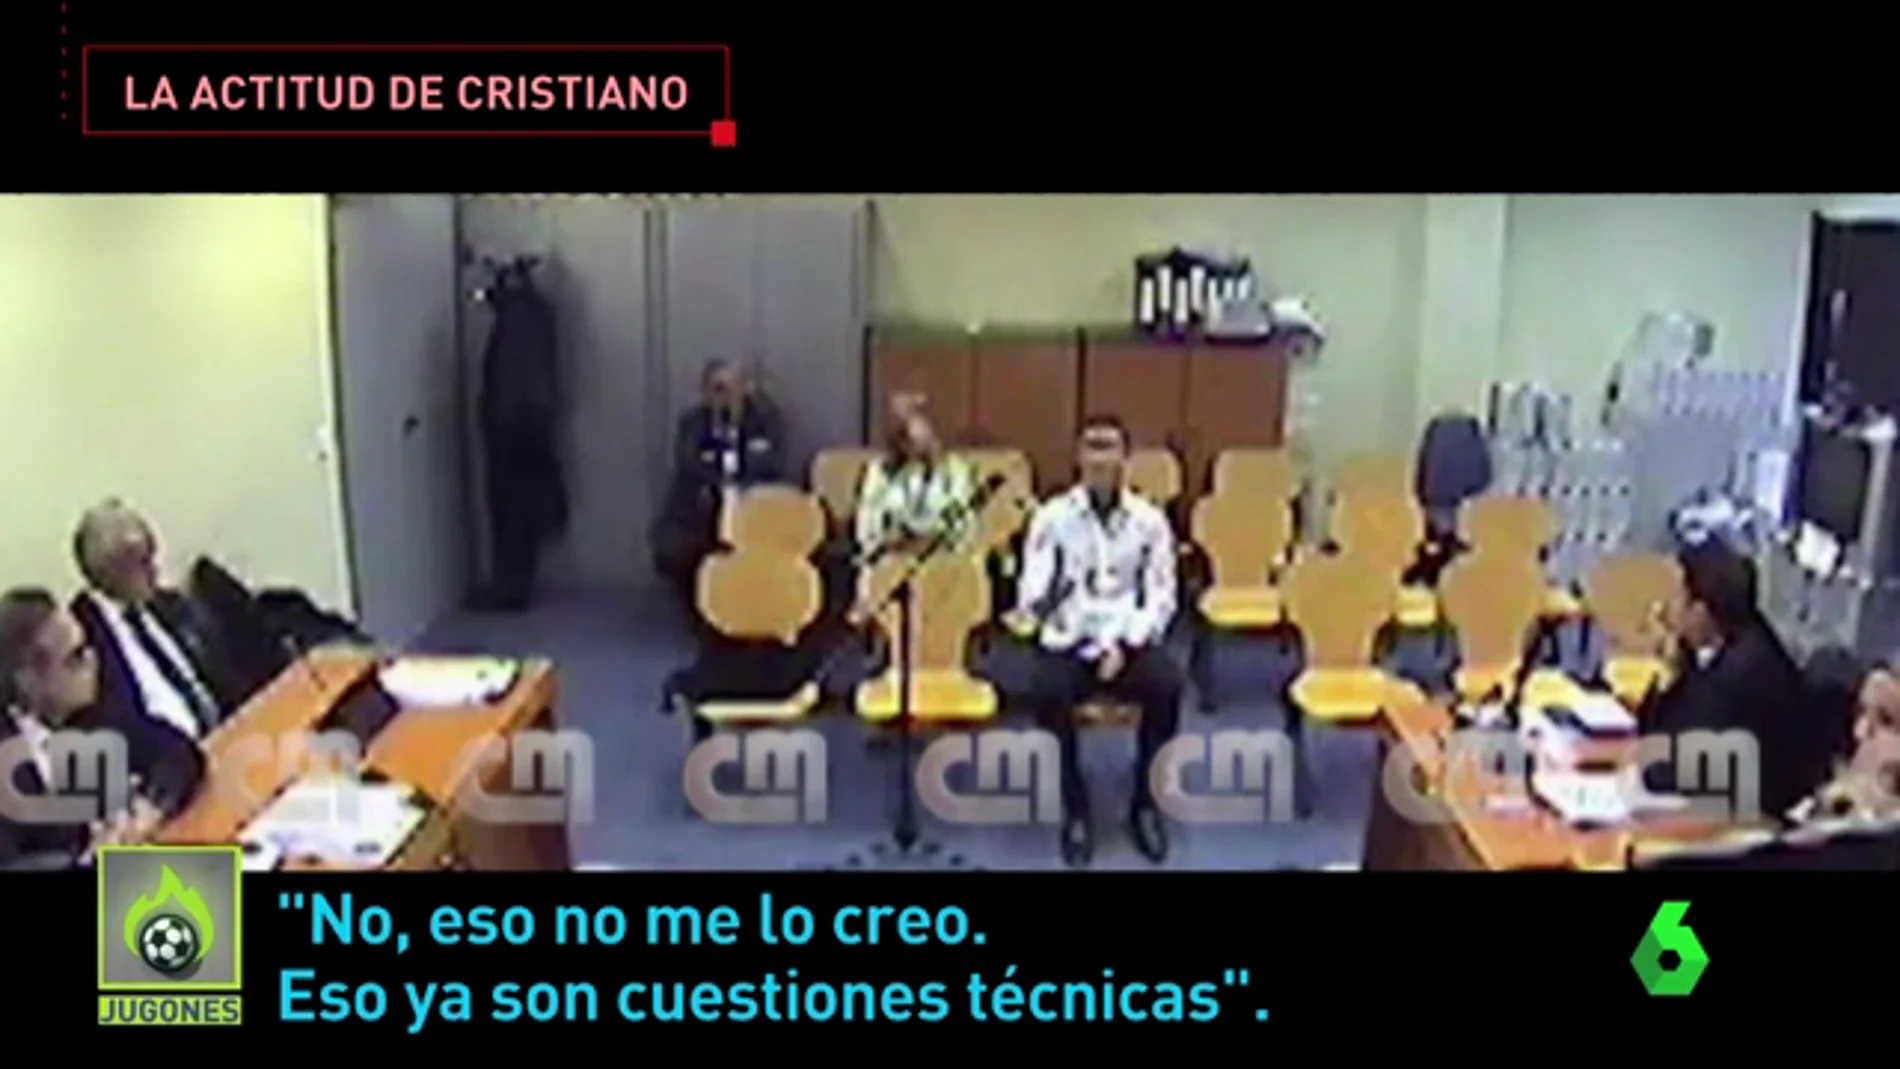 Un experto analiza la actitud de Cristiano Ronaldo en el juicio: "Estaba nervioso y ofuscado"